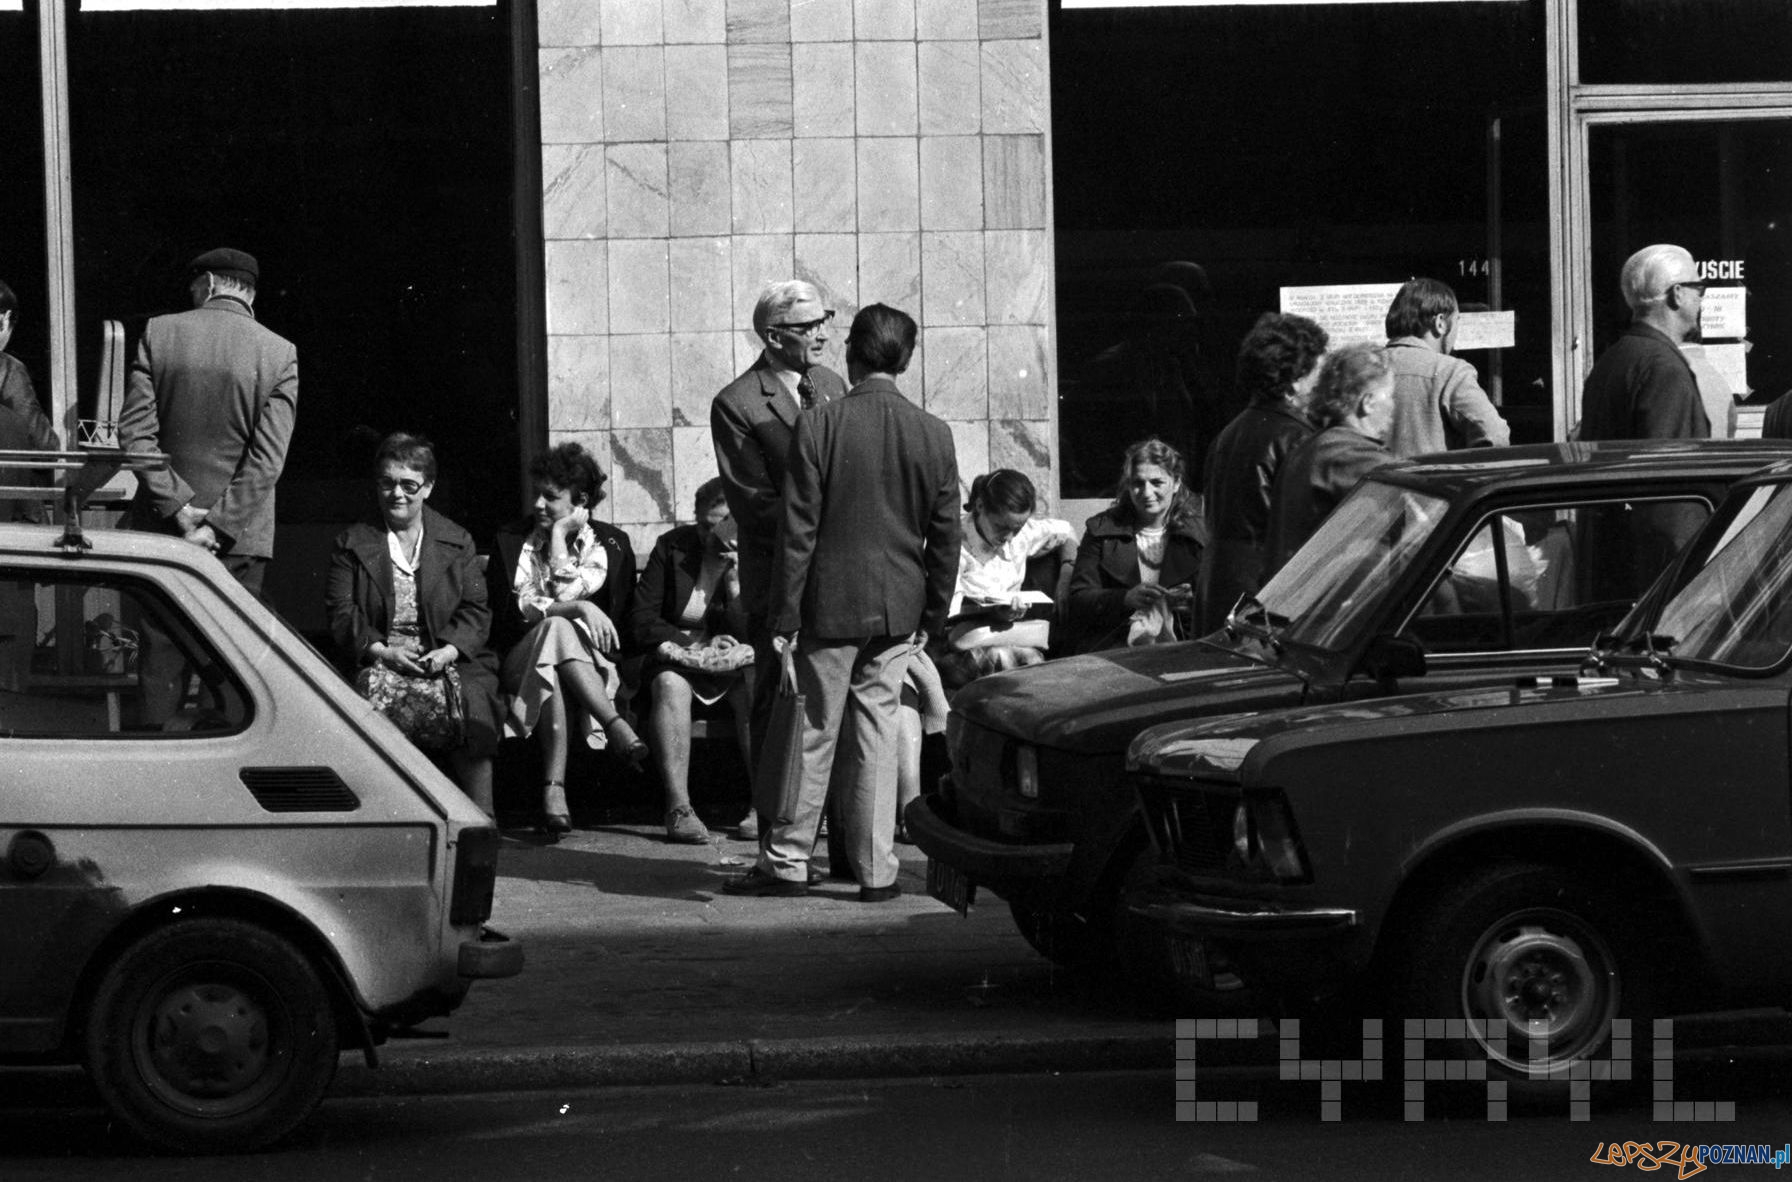 Klienci oczekujacy na otwarcie sklepu - 1981 St. Wiktor Cyryl  Foto: 